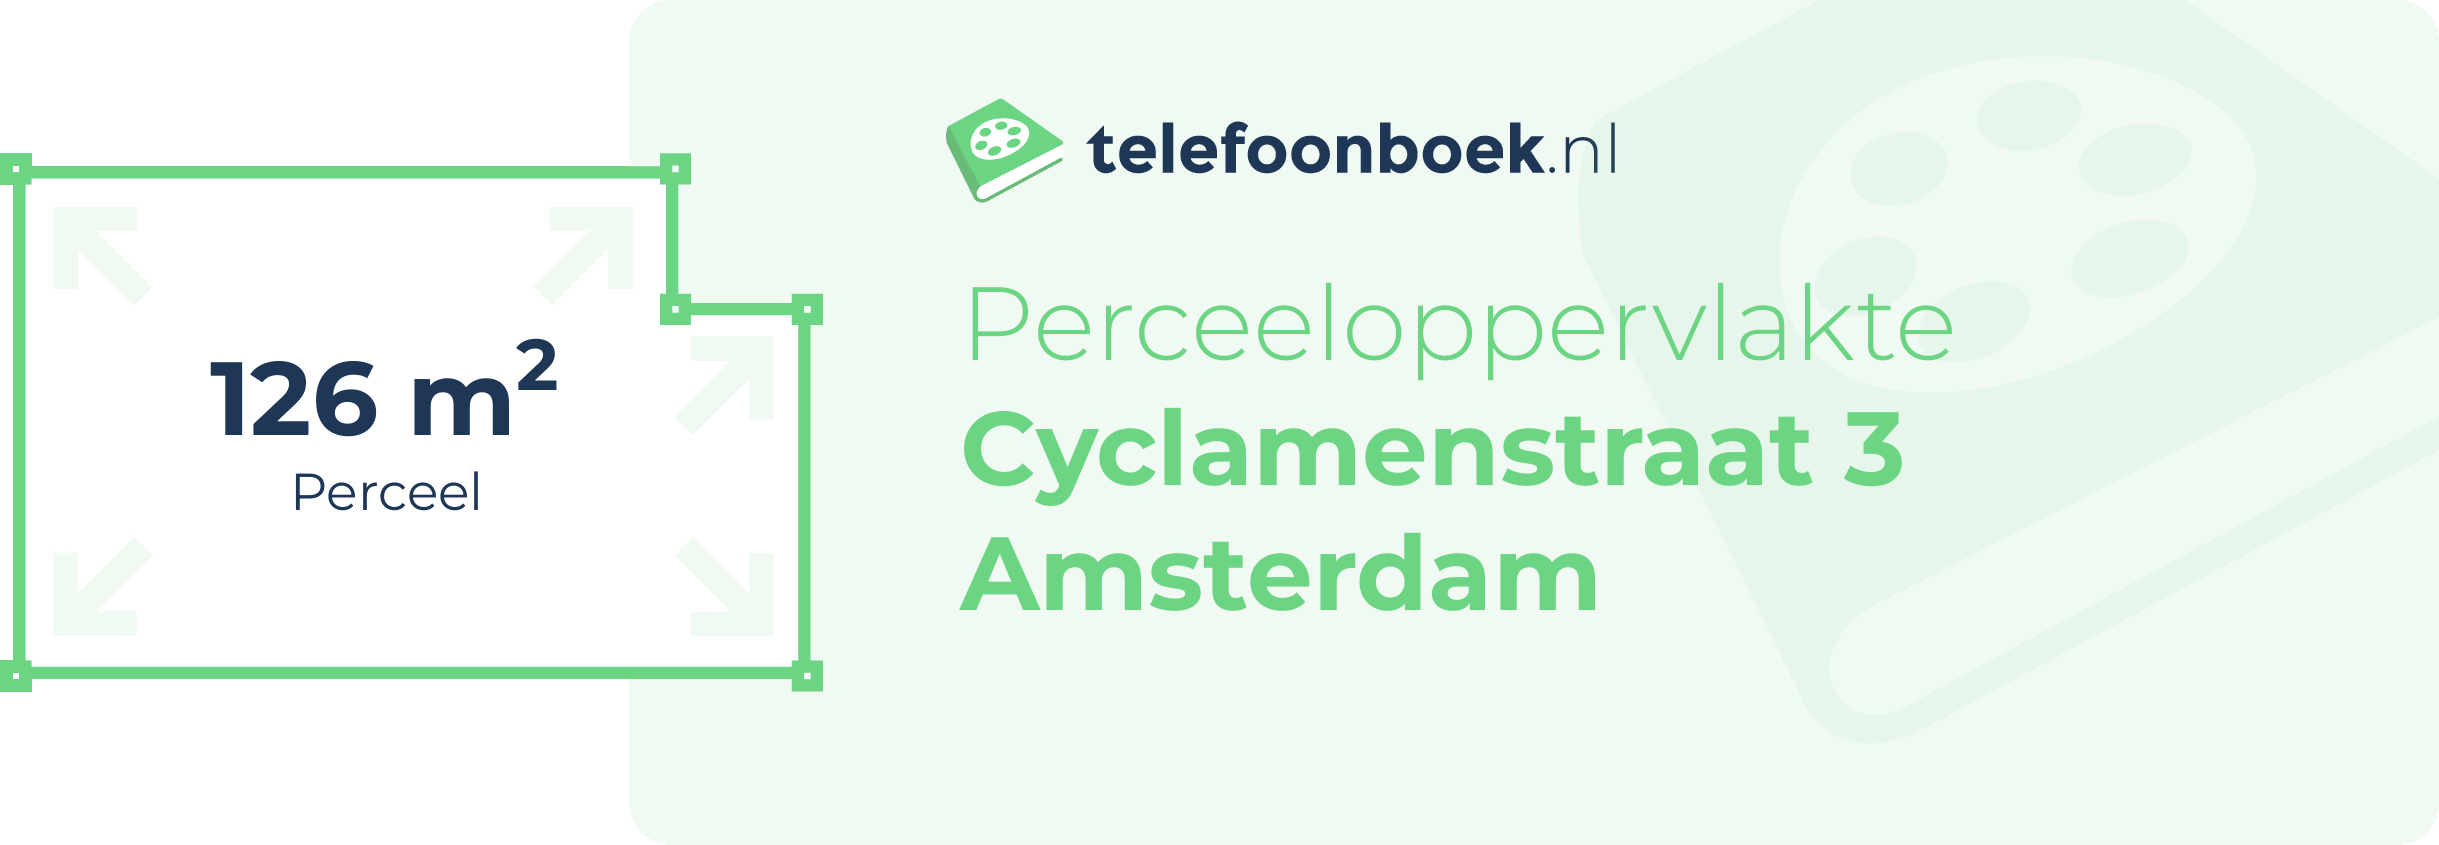 Perceeloppervlakte Cyclamenstraat 3 Amsterdam